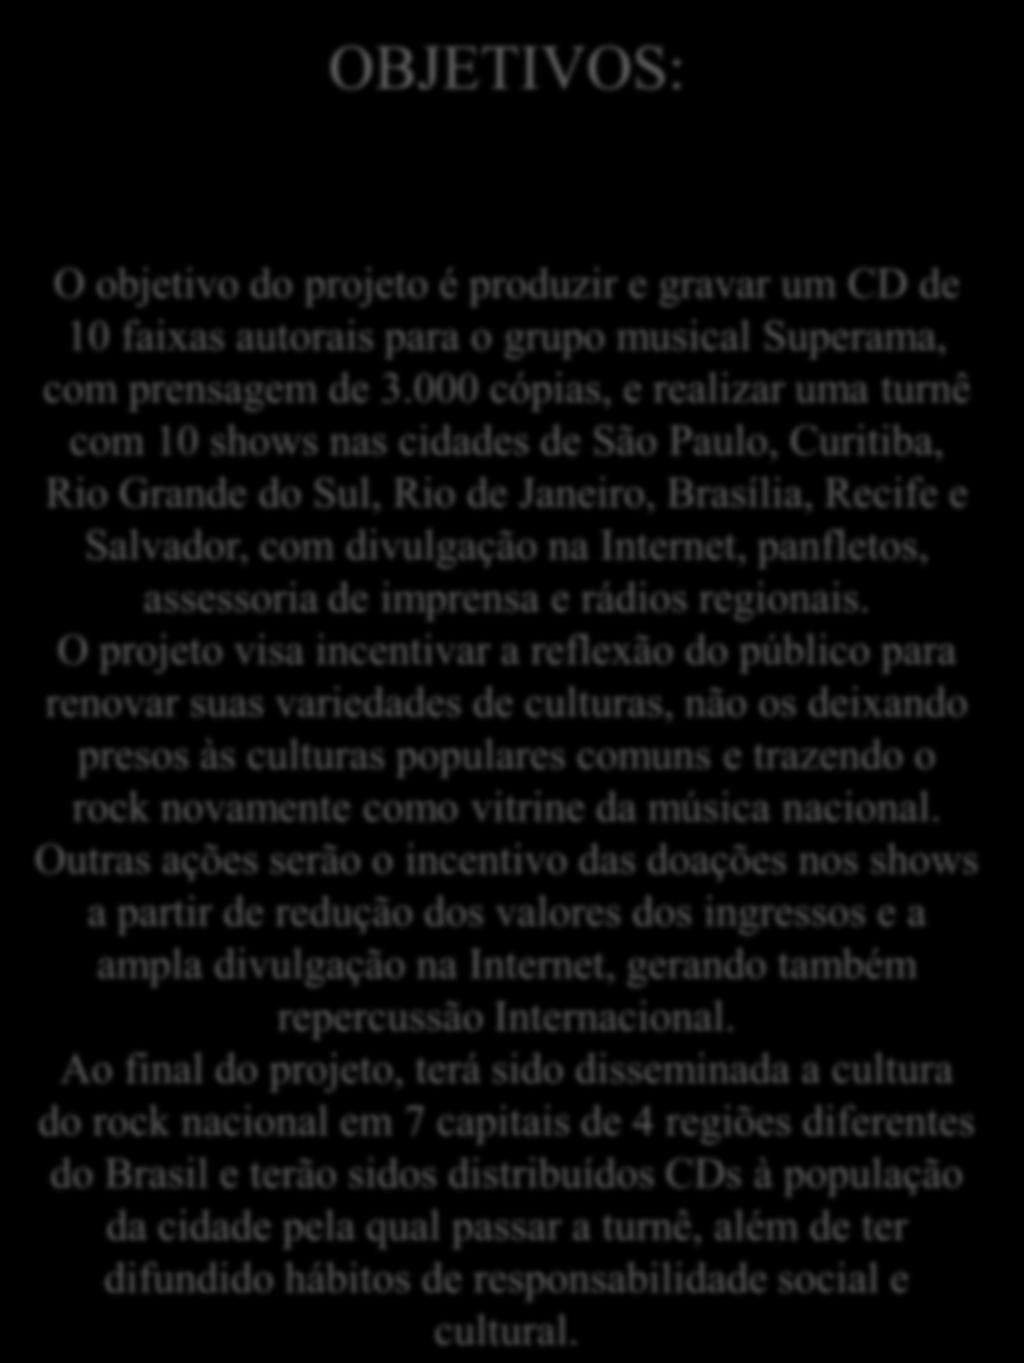 OBJETIVOS: O objetivo do projeto é produzir e gravar um CD de 10 faixas autorais para o grupo musical Superama, com prensagem de 3.